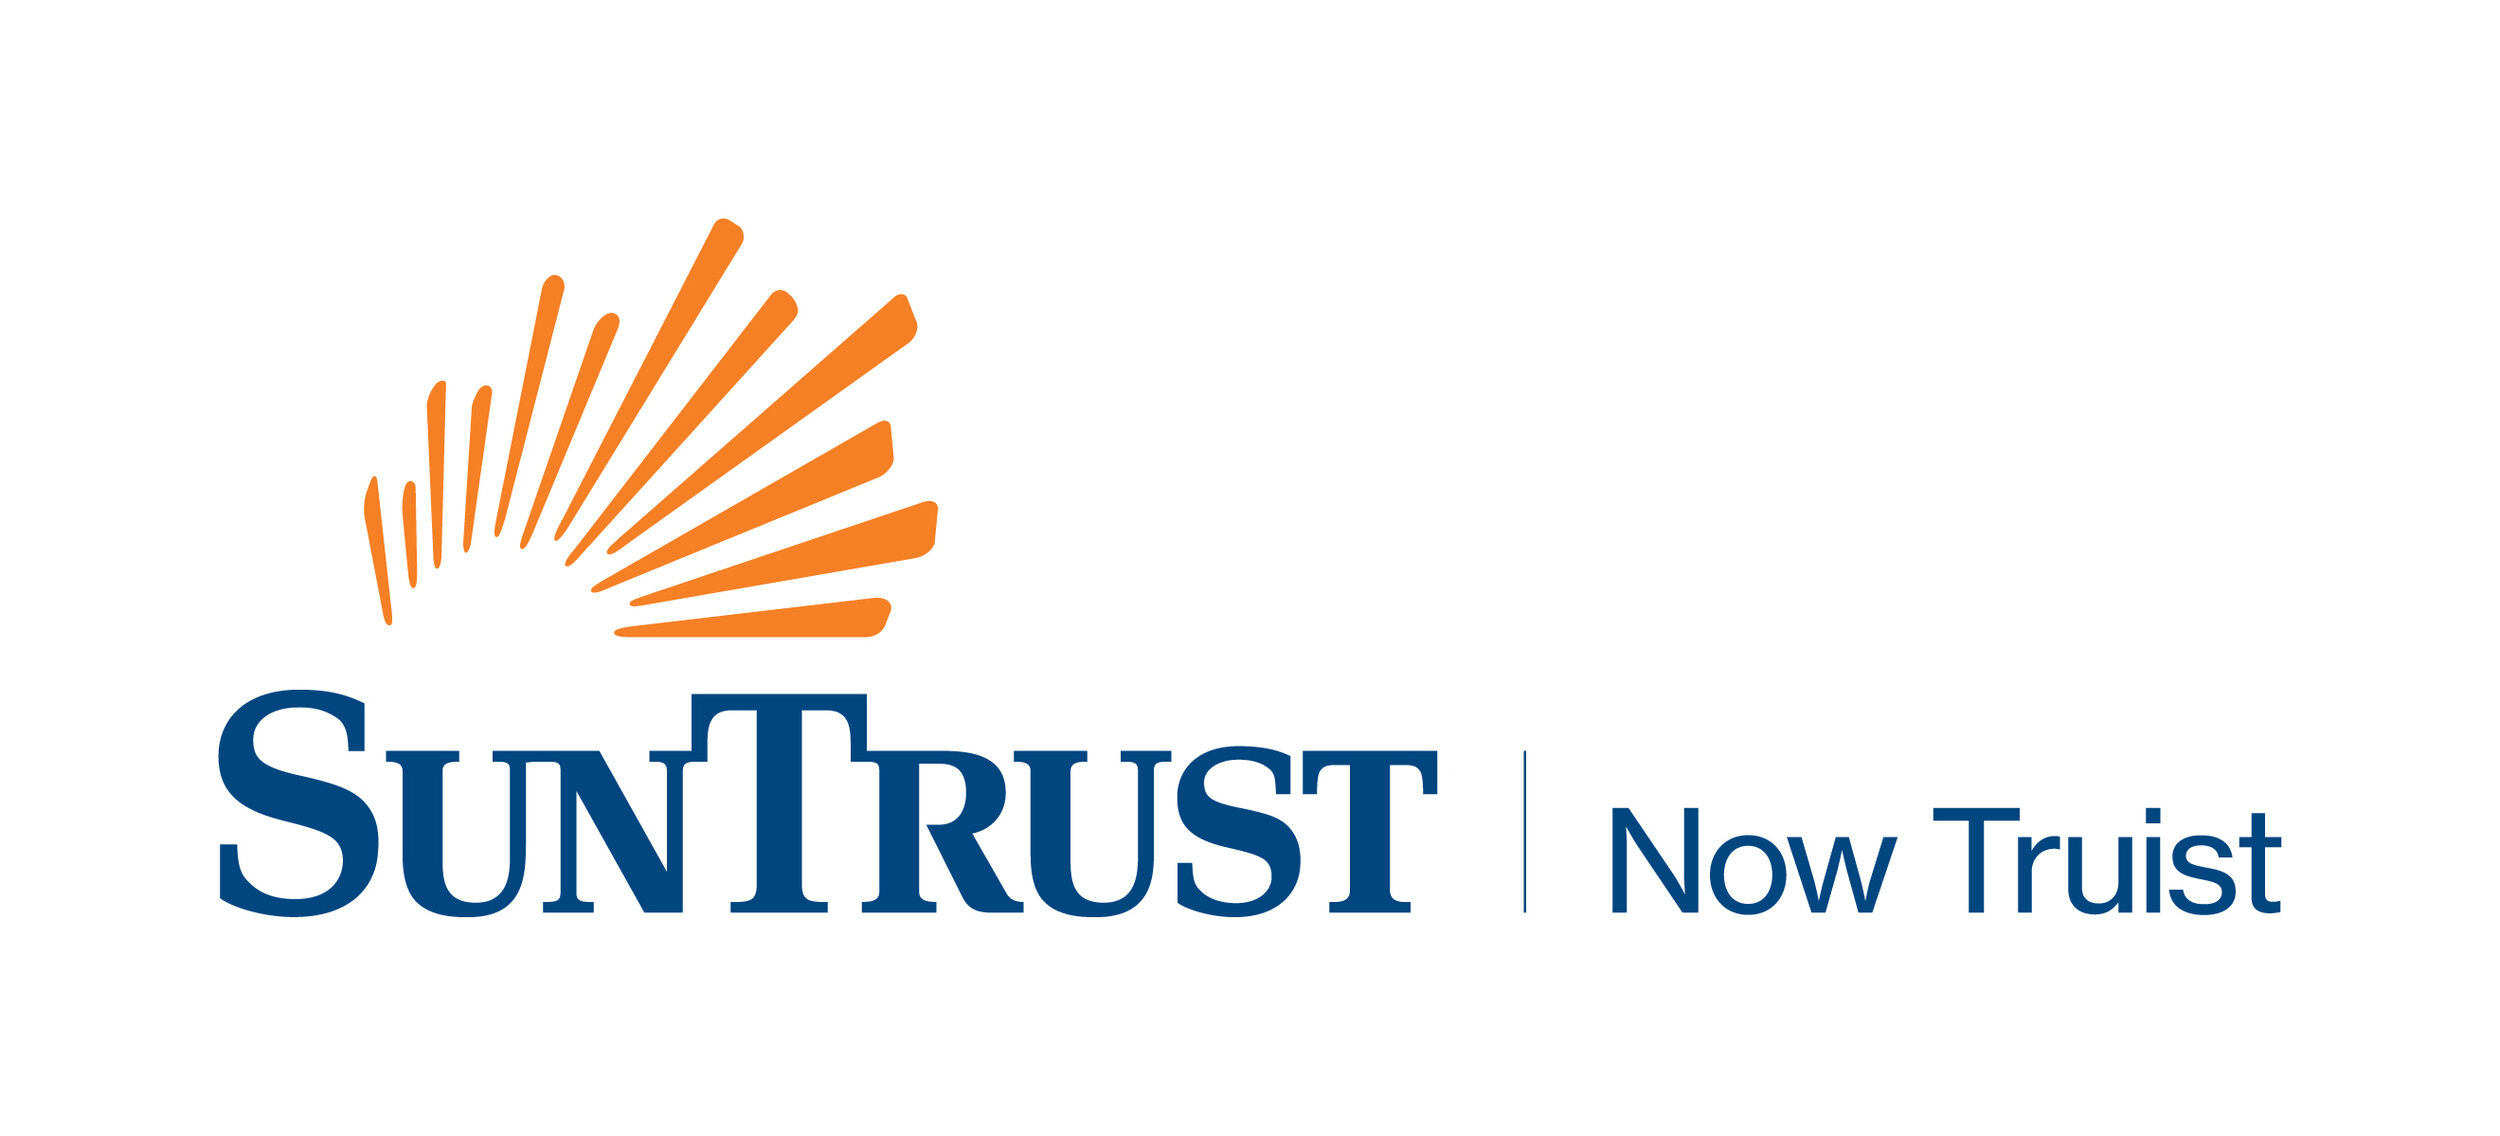 SunTrust_Now_Truist_logo.jpg